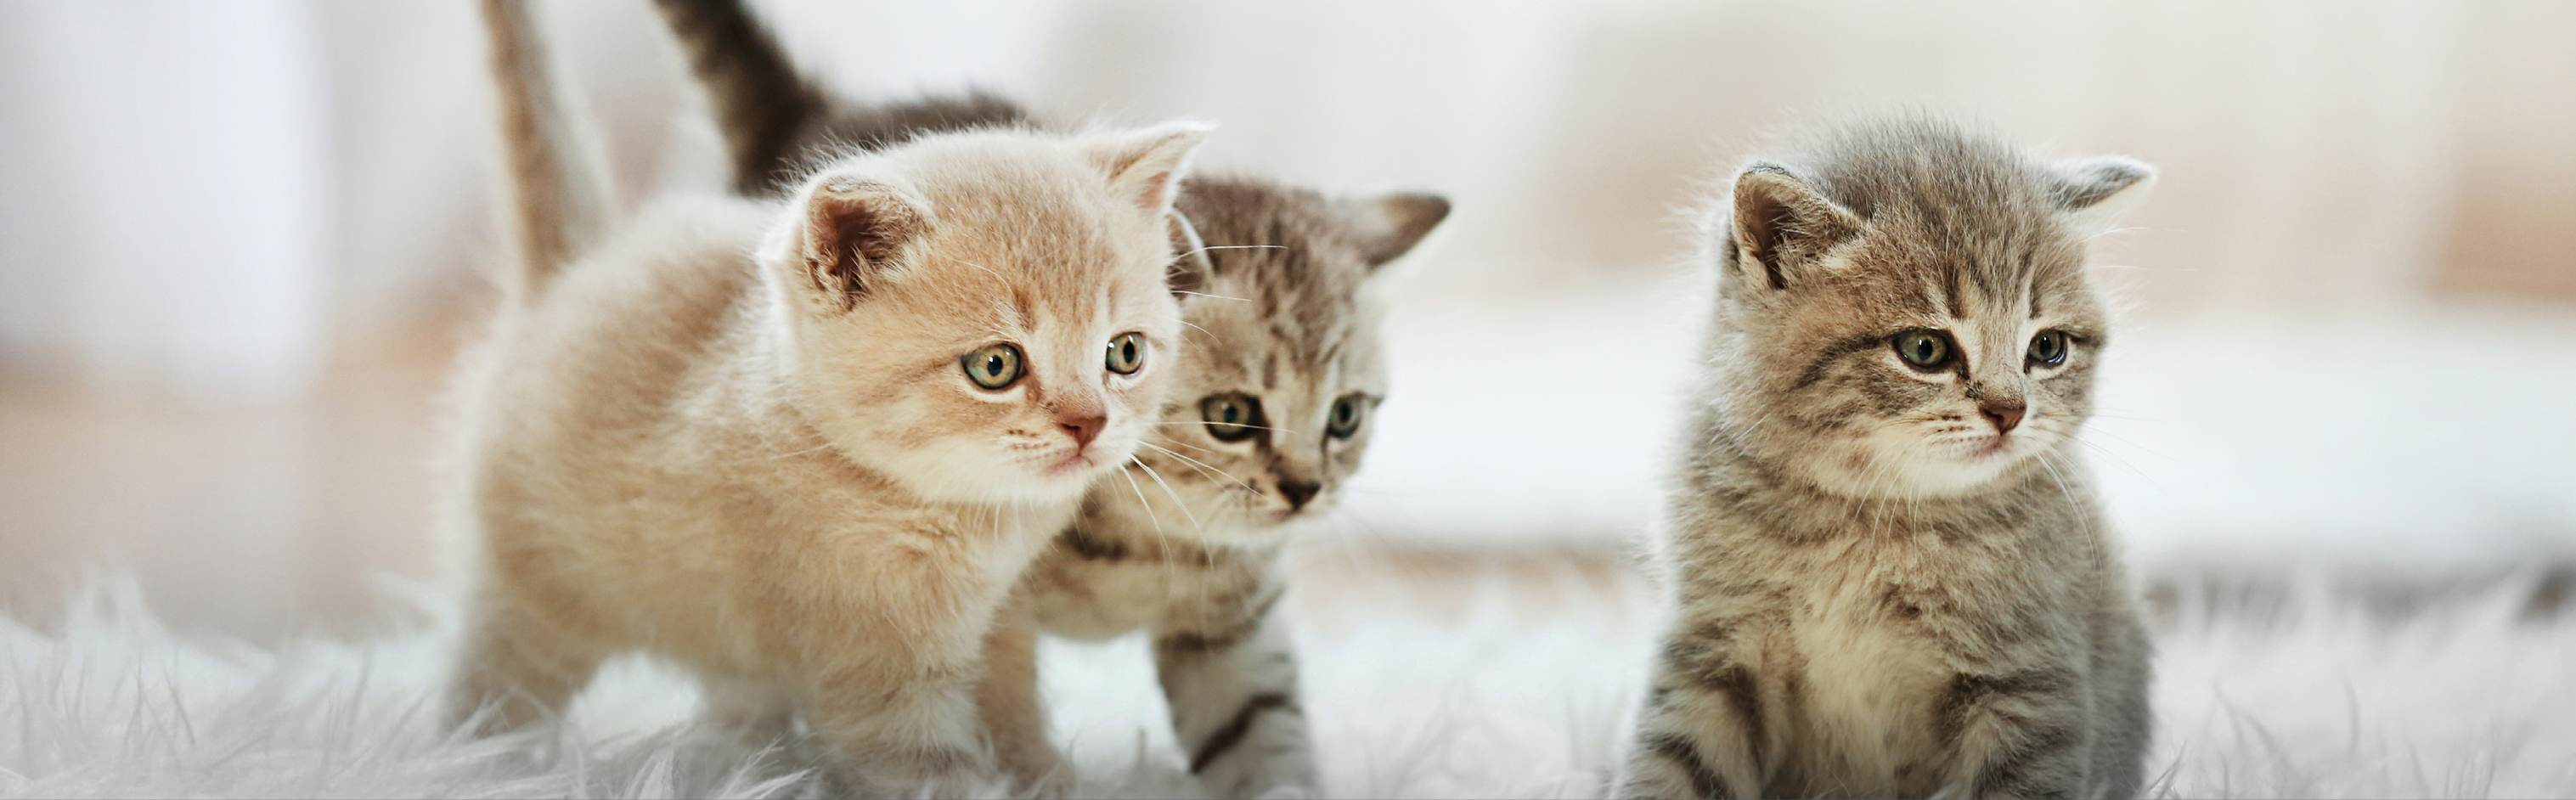 3 gatitos caminando y sentados sobre una alfombra